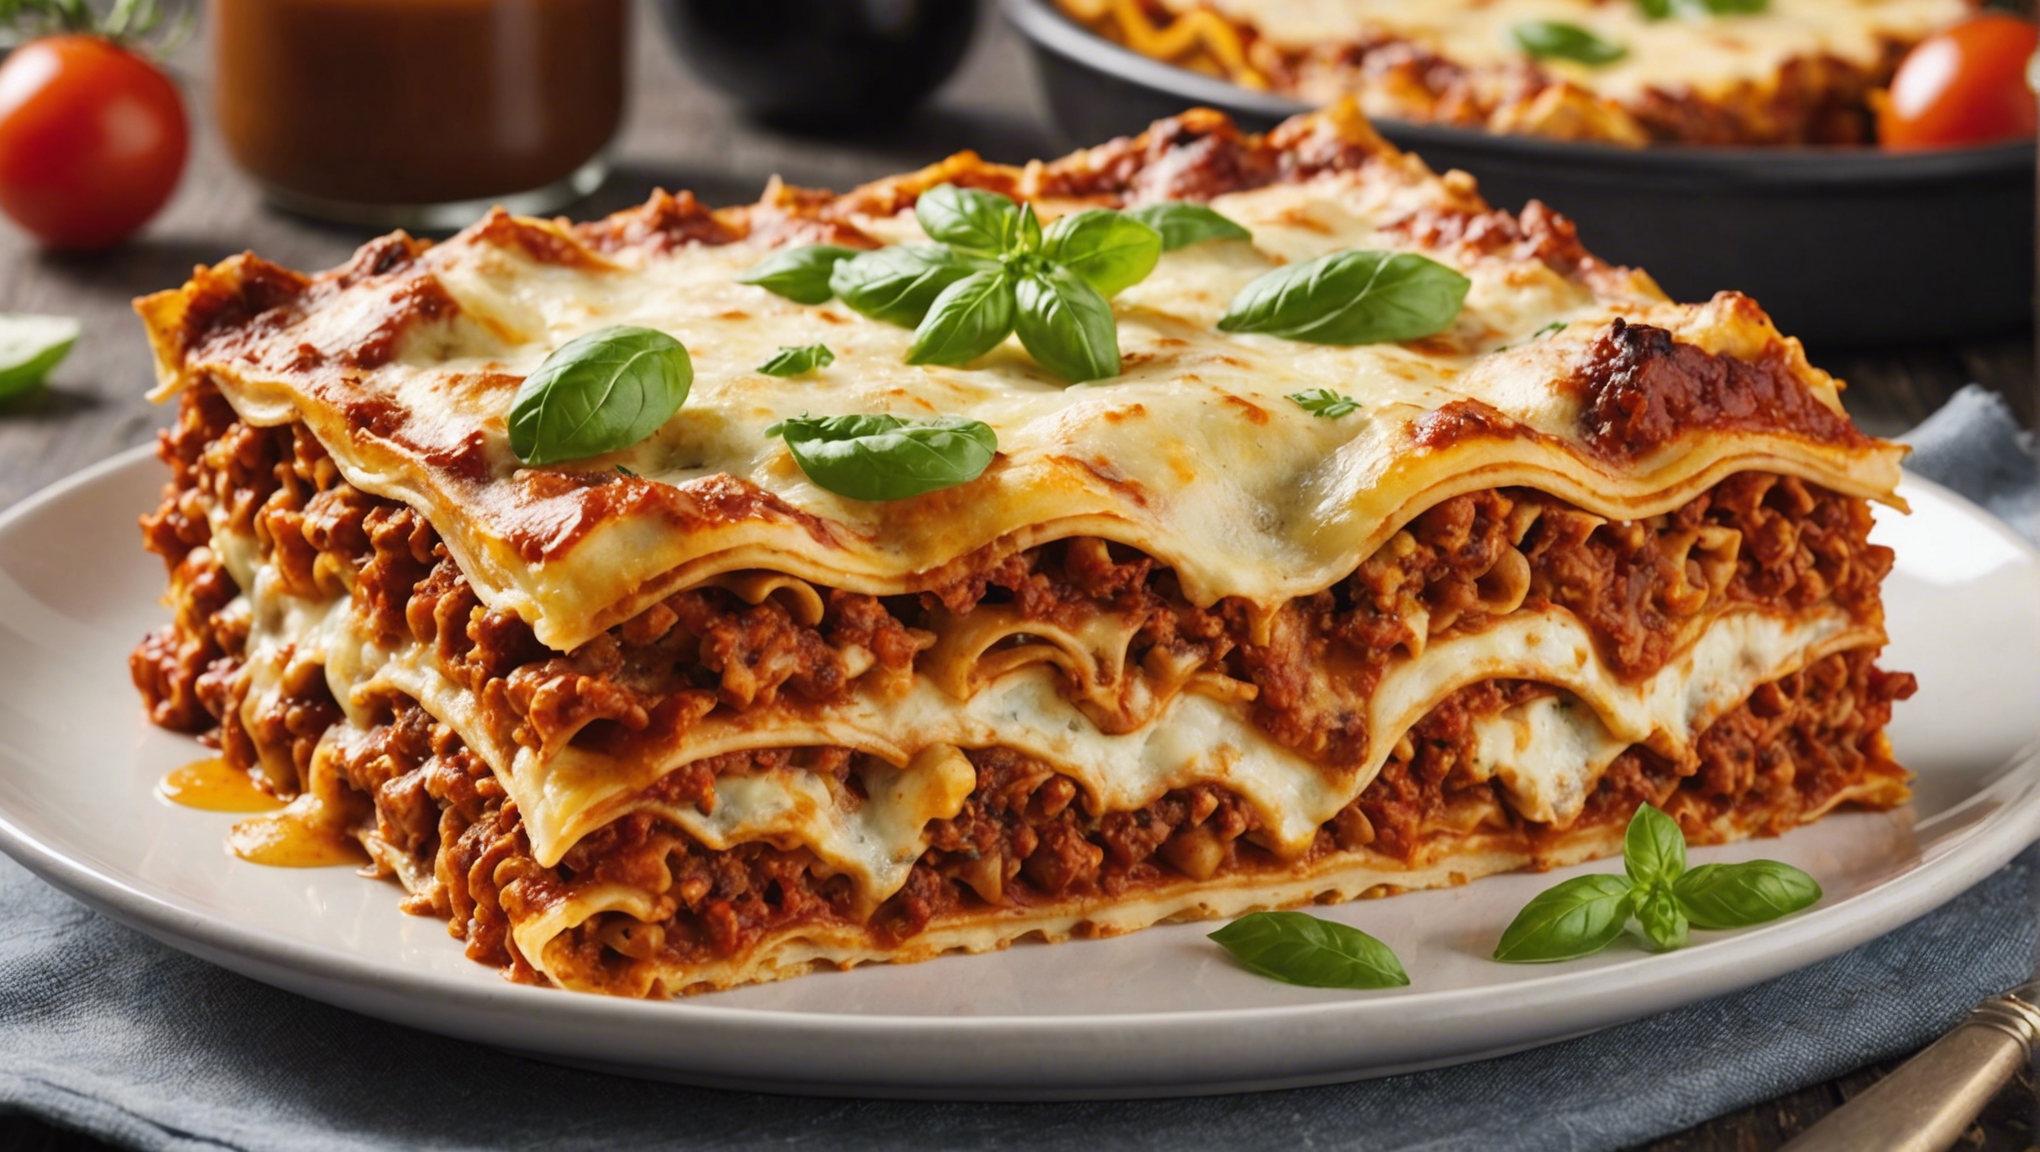 découvrez les ingrédients essentiels pour préparer les meilleures lasagnes végétariennes riches en saveurs. apprenez comment composer des lasagnes végétariennes délicieuses et savoureuses.